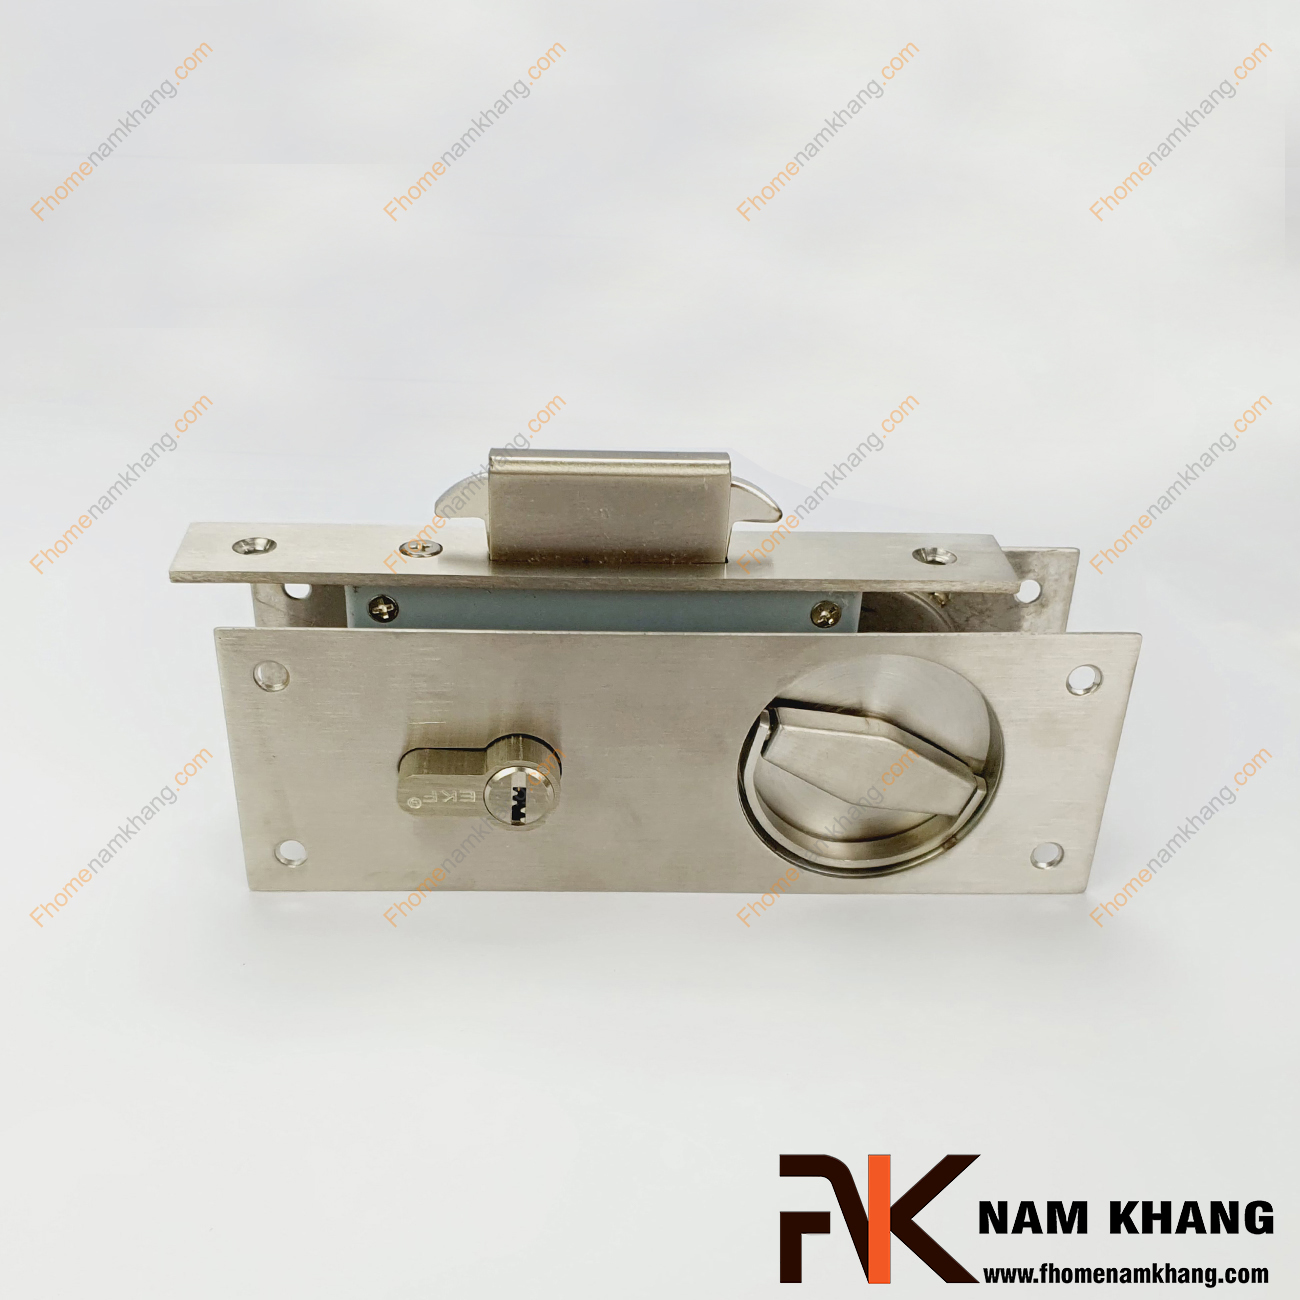 Khóa âm cửa lùa màu inox xước NK557-INOX được sản xuất từ inox cao cấp, là dòng khóa thông dụng và được ưa chuộng sử dụng tại thị trường Việt Nam.